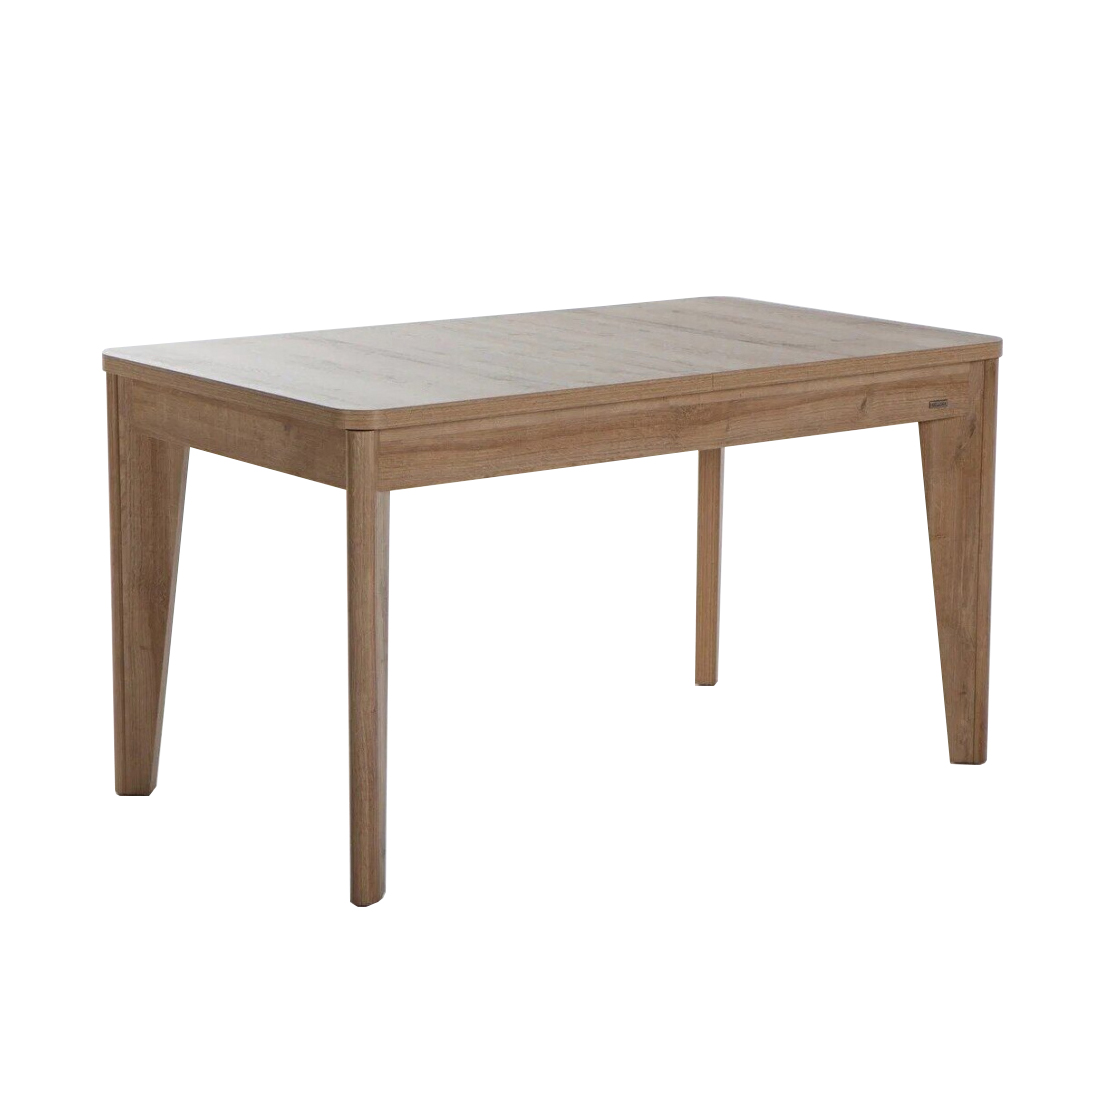 Стол обеденный Bellona Vienza, раскладной, mini, размер 140(180)x80x77 см (VIEN-14A)VIEN-14A